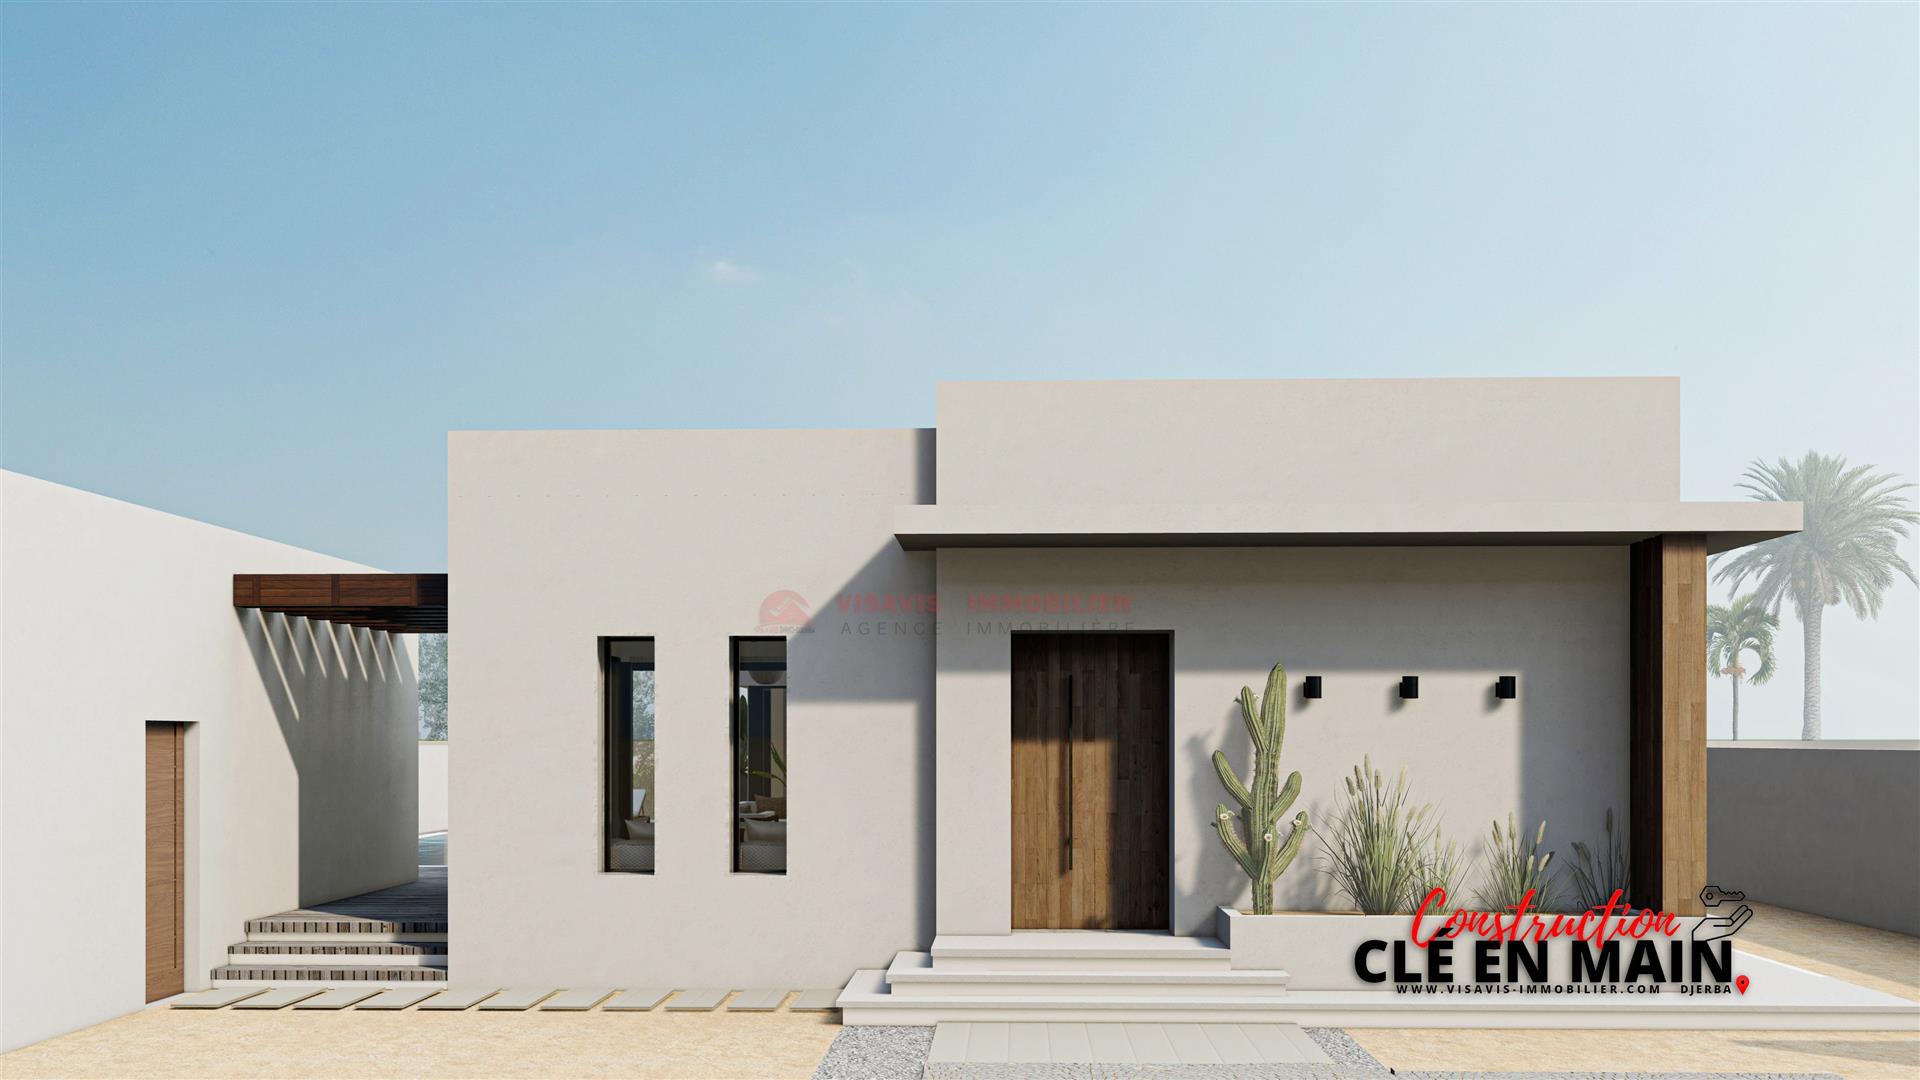 Immobilier neuf à Djerba Tunisie - Zone urbaine - titre bleu